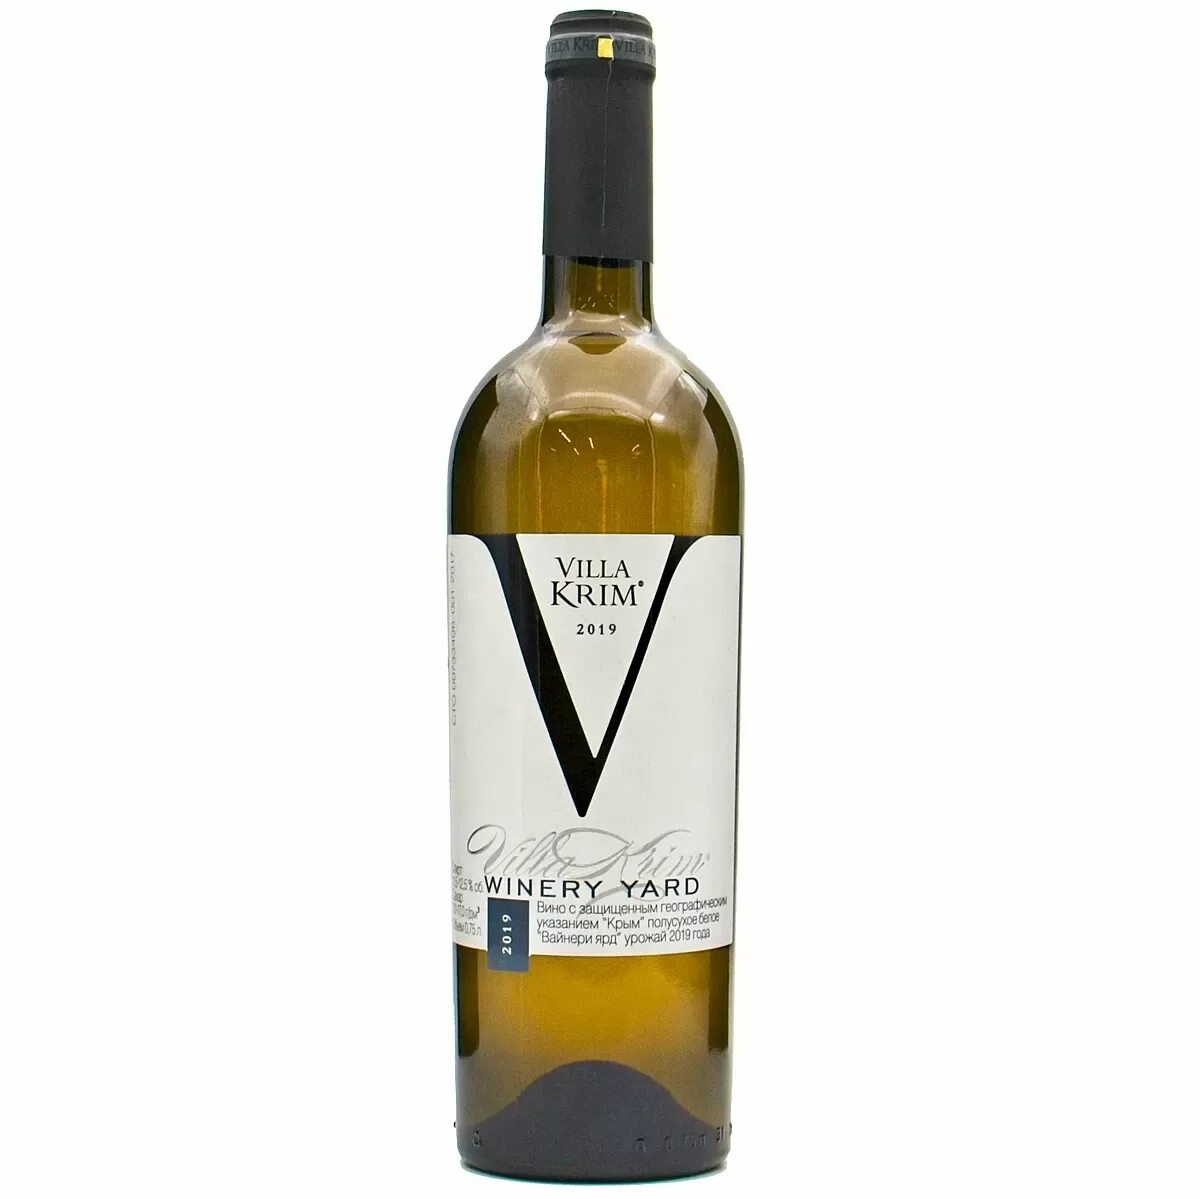 Вино "Villa krim" Winery Yard. Вилла Крым Вайнери вино. Втла Крым Вайнерт ярд вино. Villa krim Рислинг.